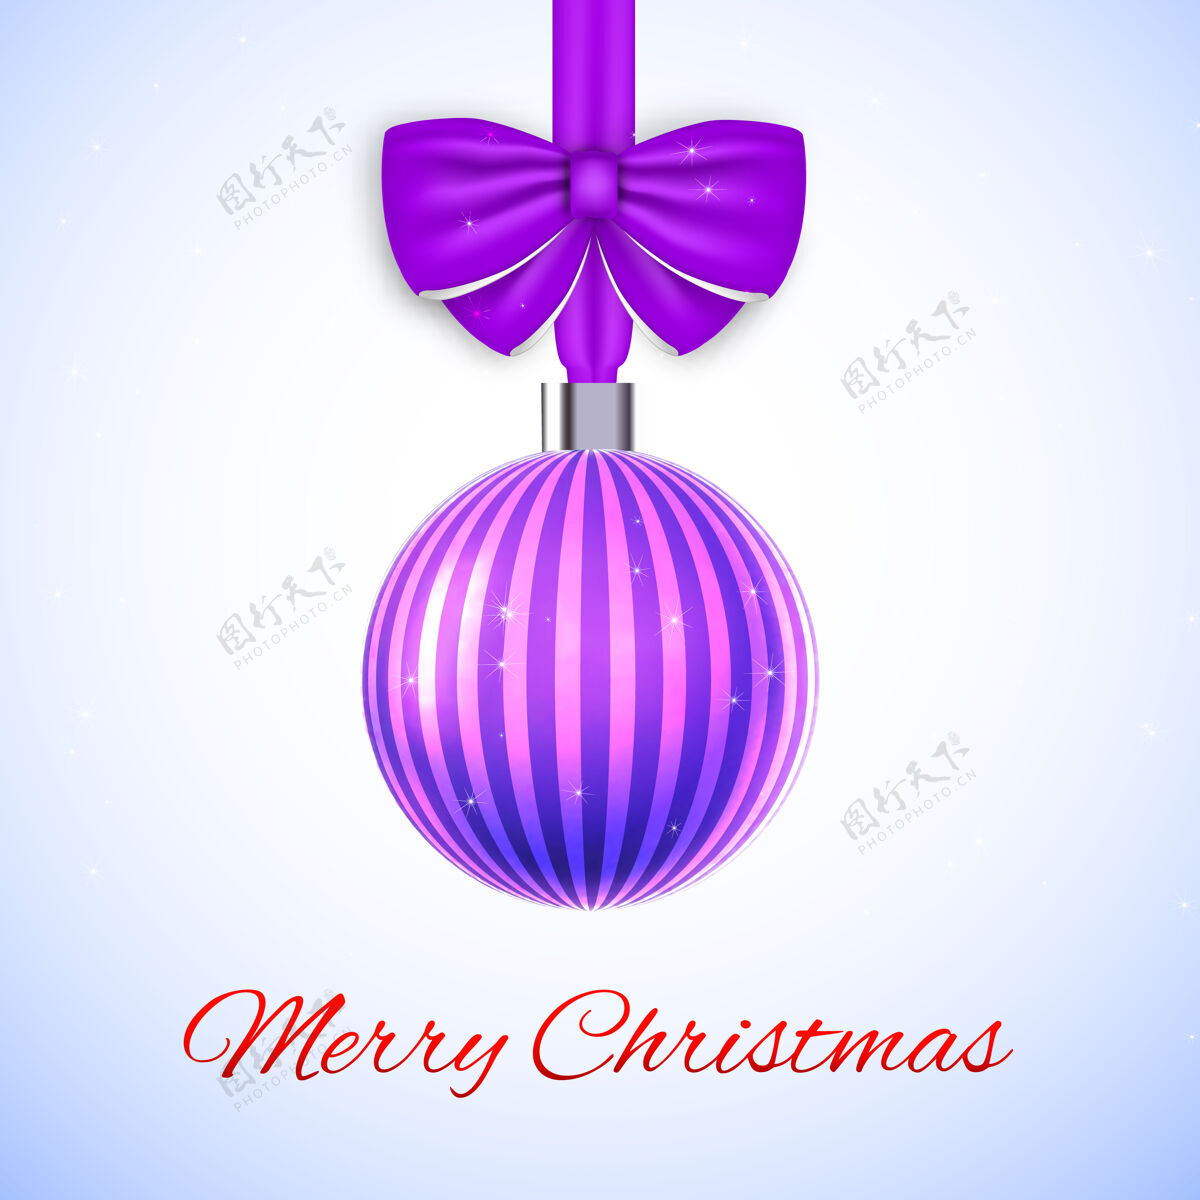 欢乐带紫色条纹球和蝴蝶结的圣诞贺卡装饰品下雪祝愿